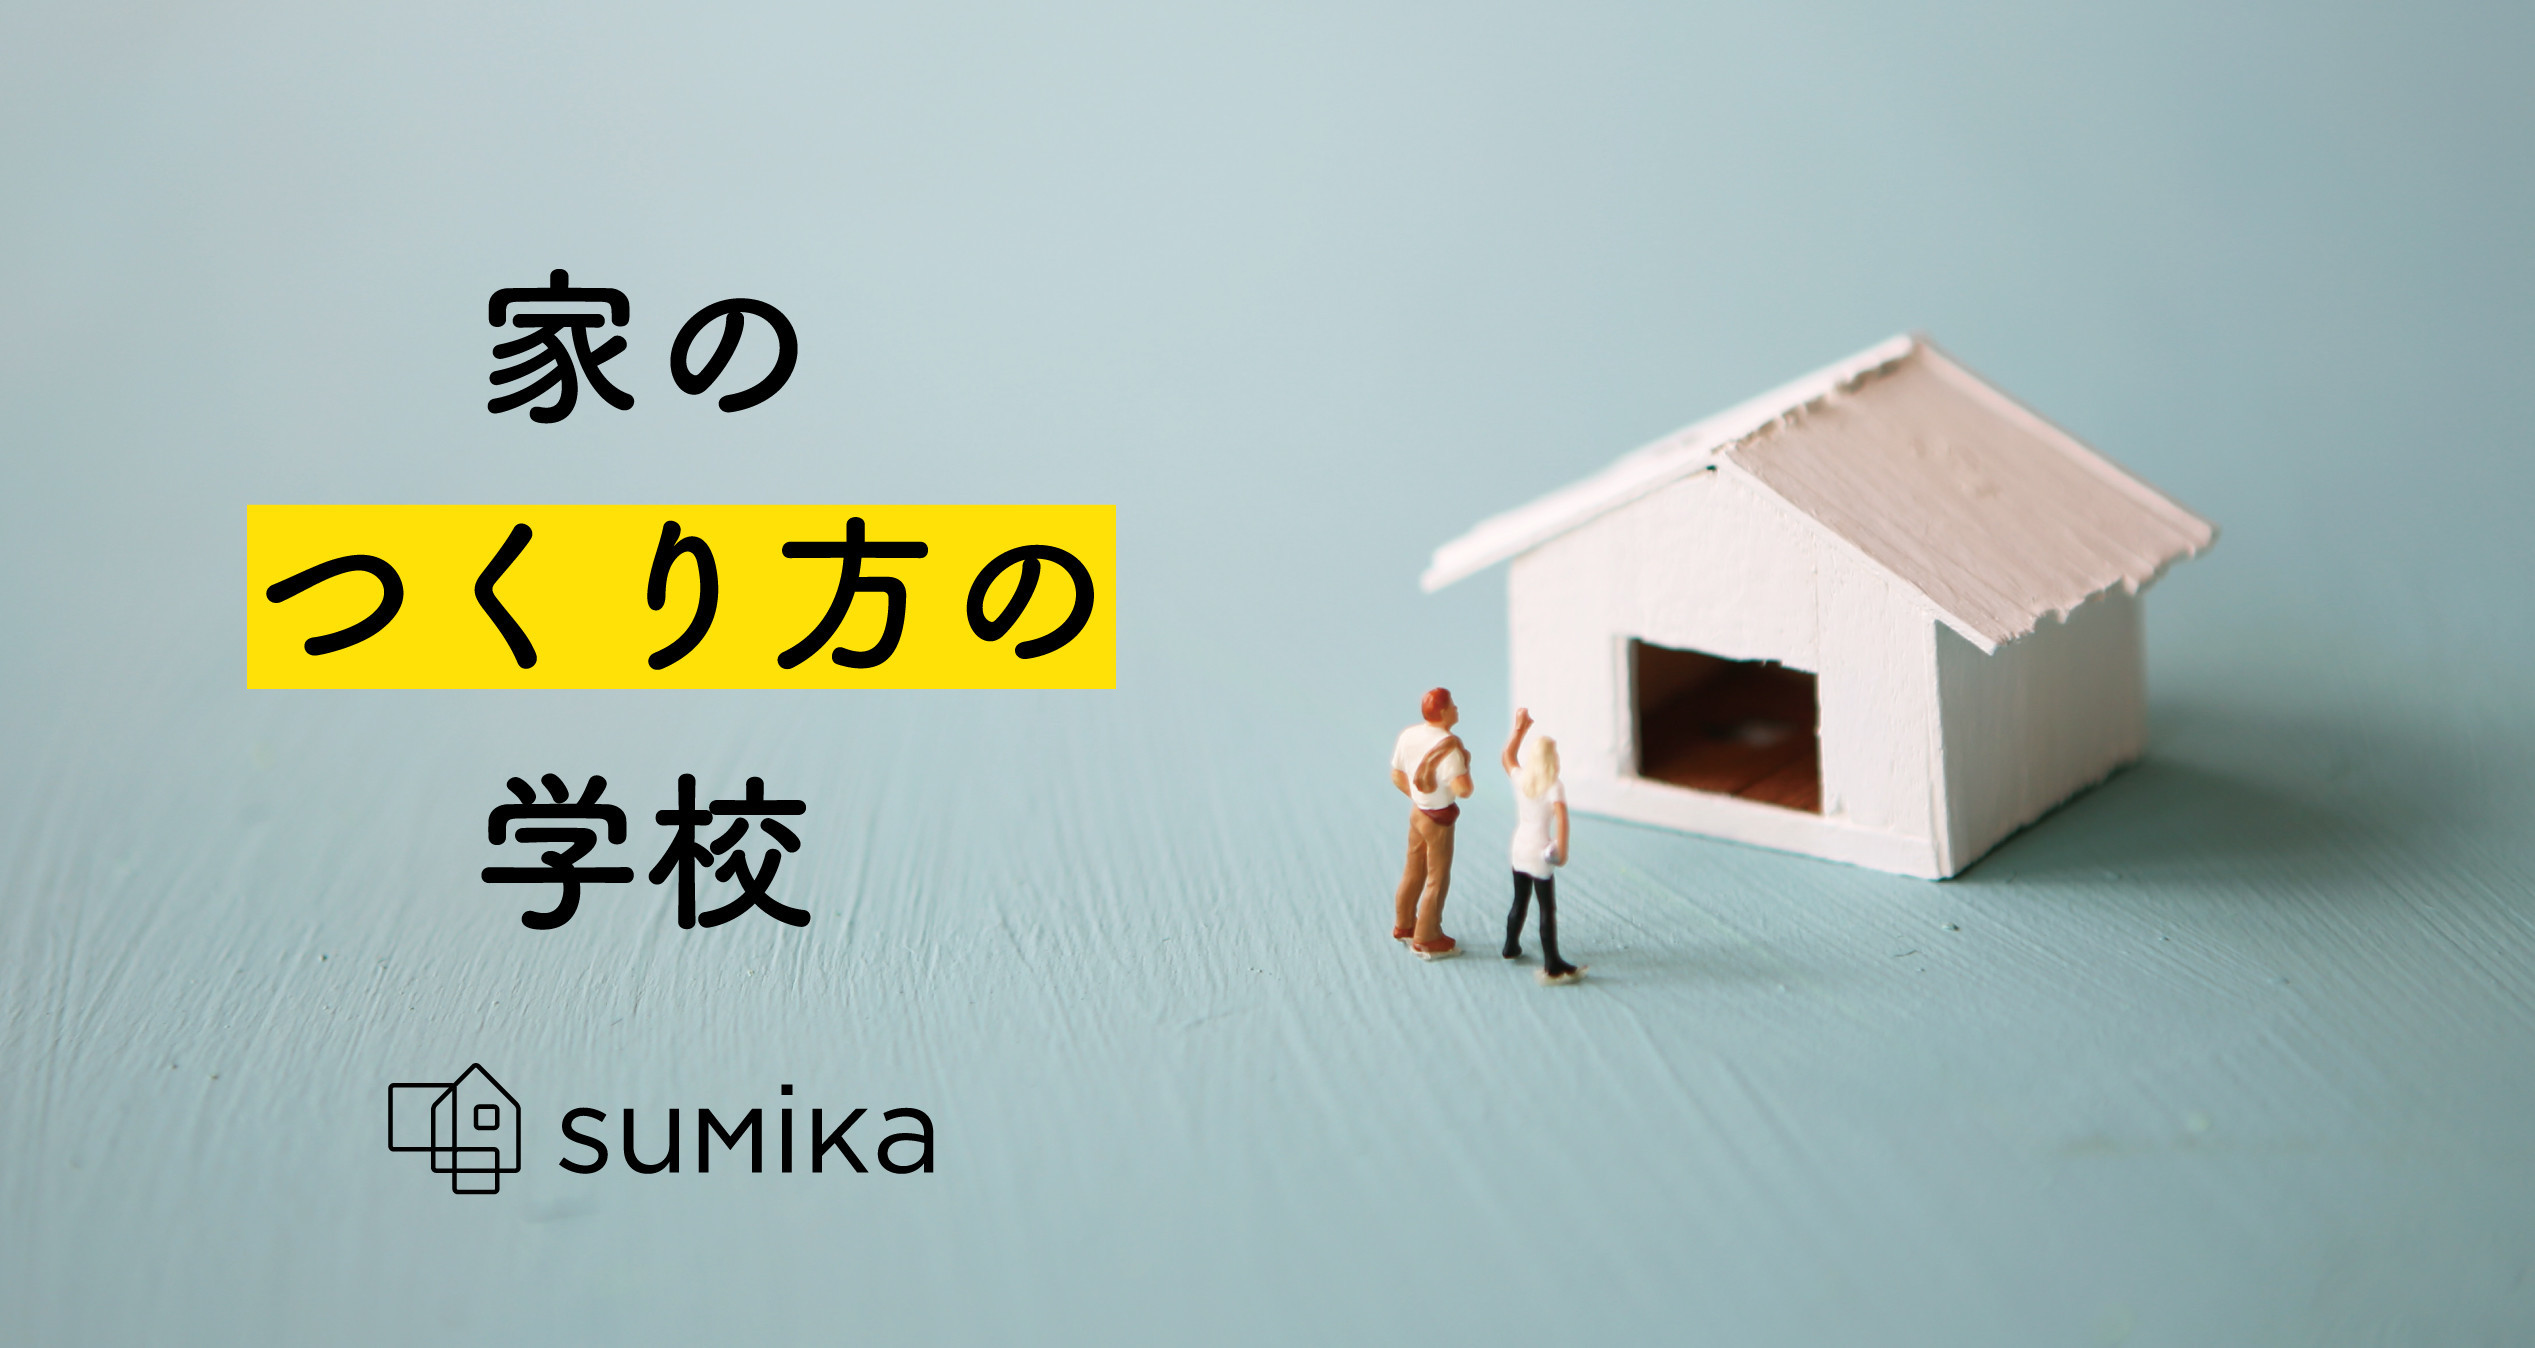 告知 平屋 頭の良い子が育つ家 省エネハウスに興味がある人 集まれ Su Sumika 建築家 工務店との家づくりを無料でサポート